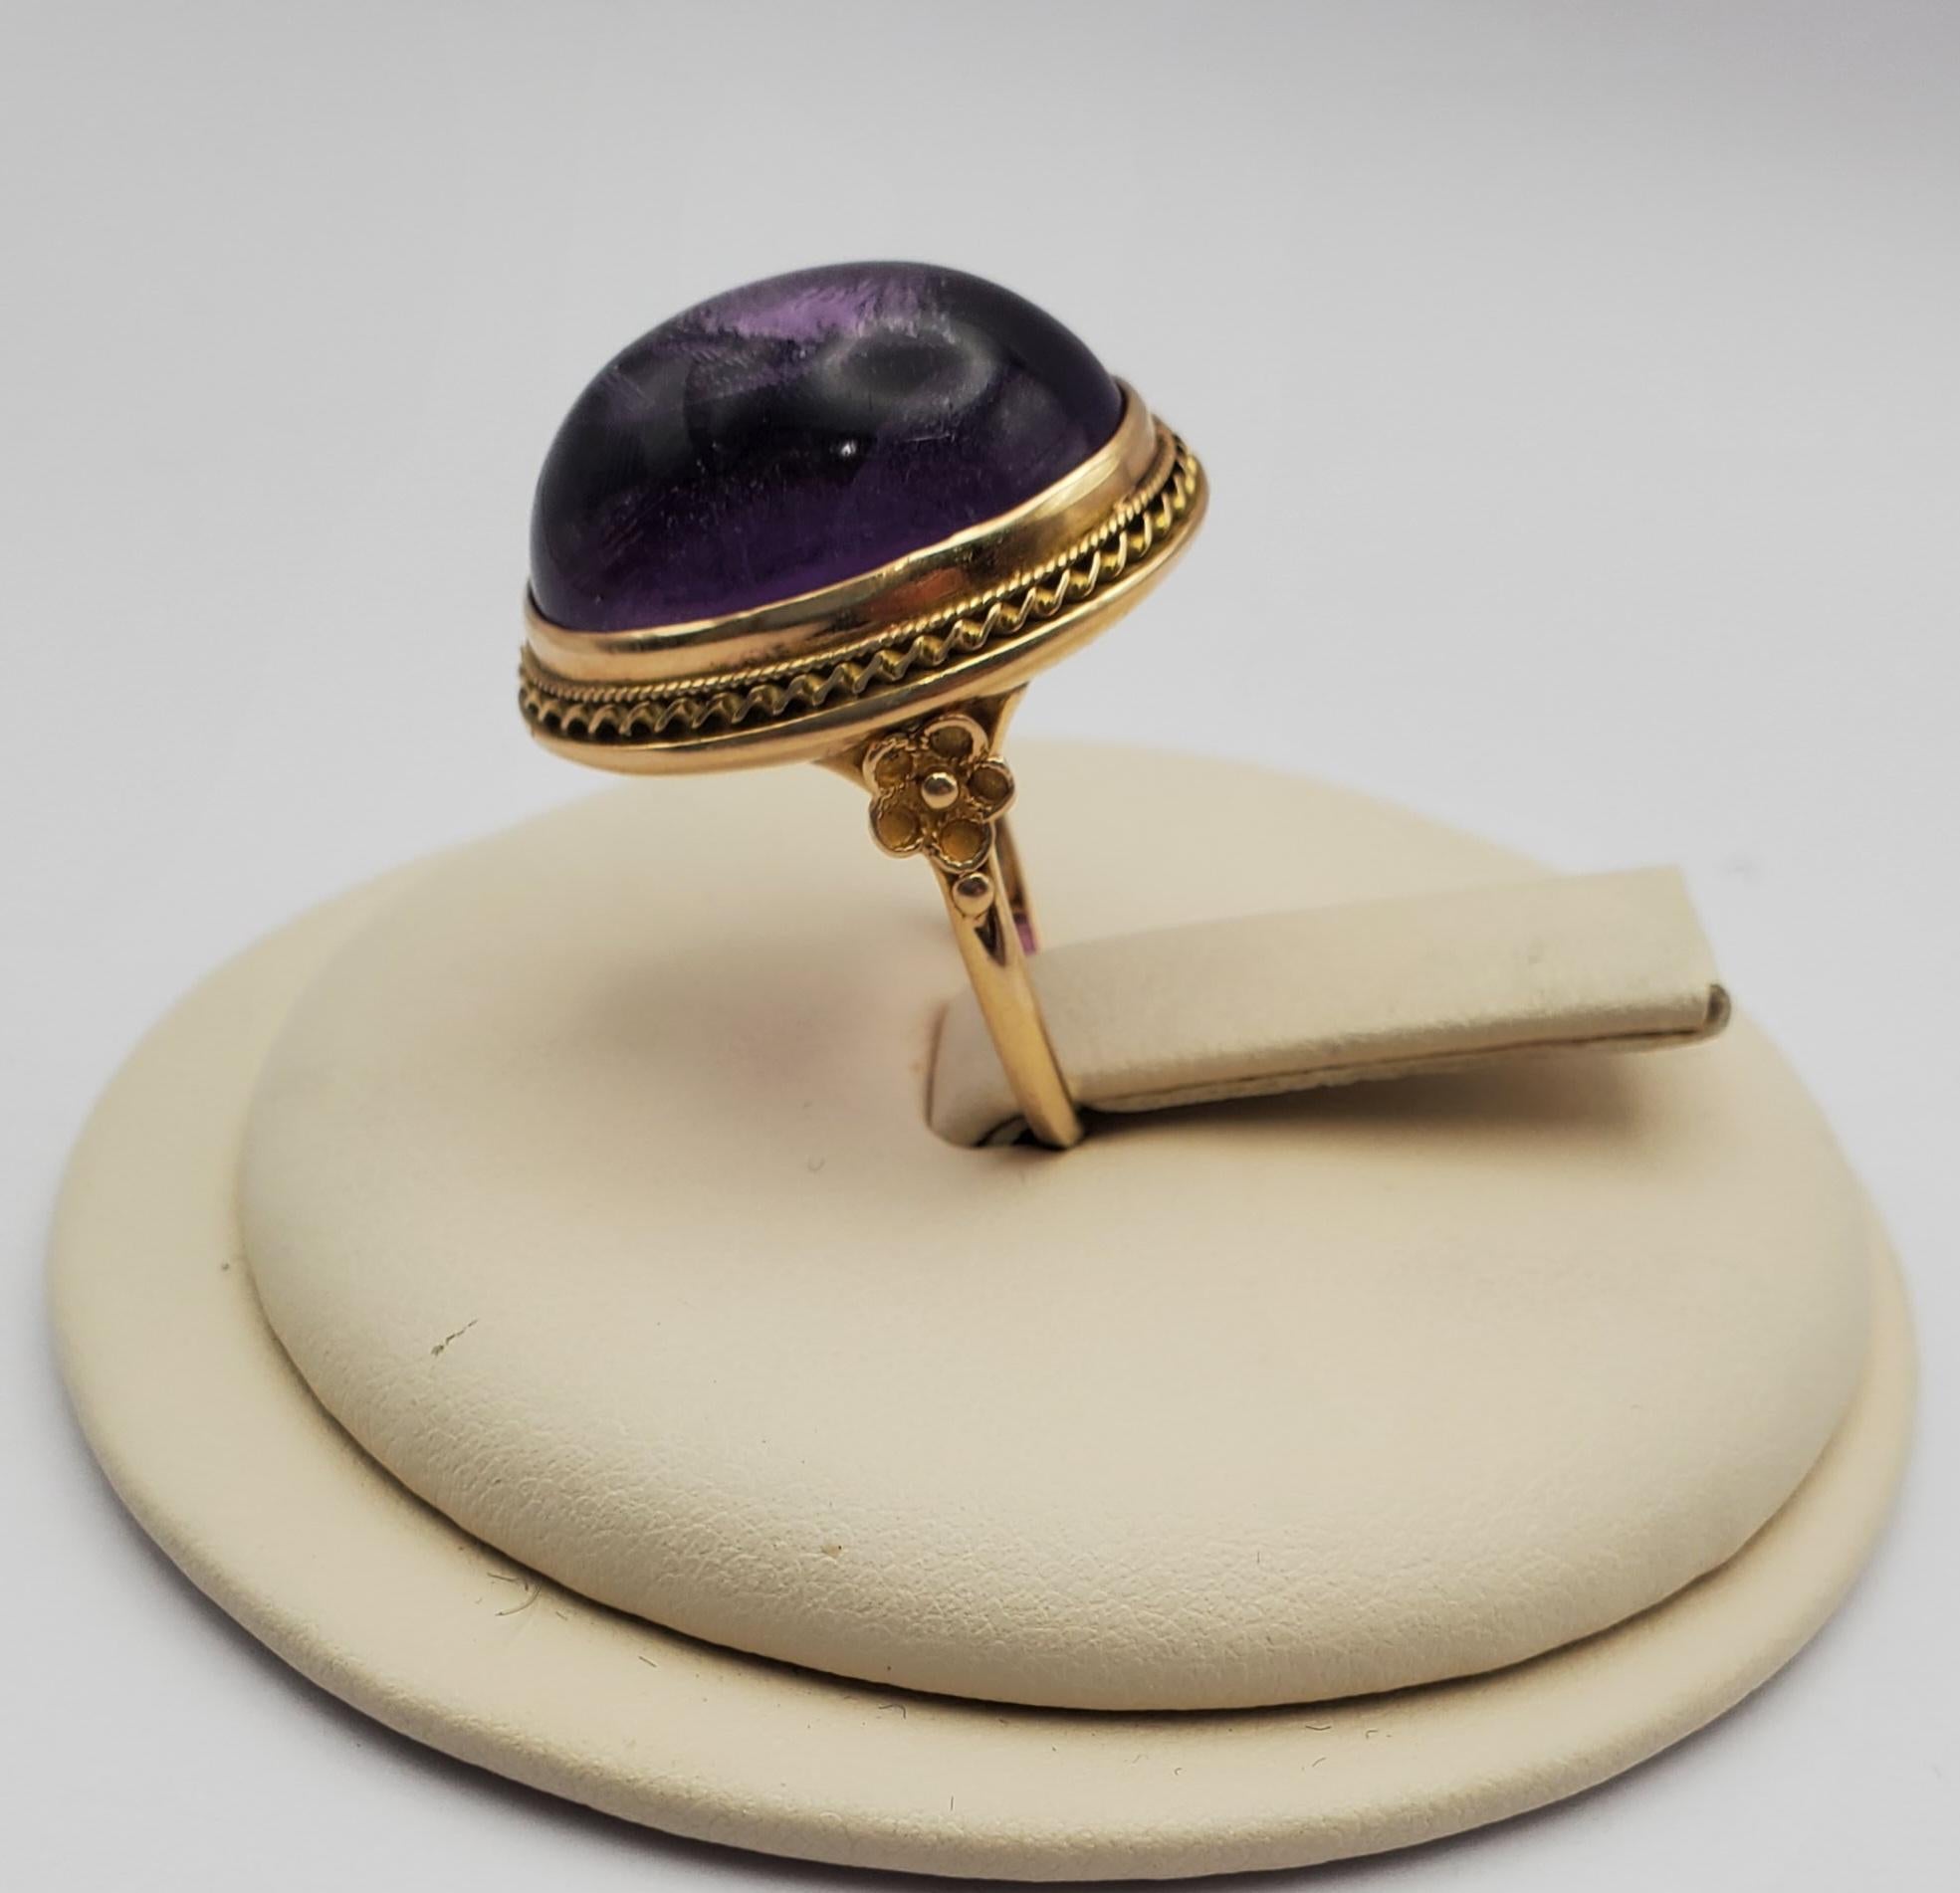 Wunderschöner großer 28,57ct Amethyst-Cabochon-Vintage-Ring. Der farbenprächtige Stein ist in eine Lünette mit geschnitzten und floralen Details eingefasst. Es ist ein Statement-Stück, perfekt für Lila-Liebhaber und Menschen mit einer Vorliebe für